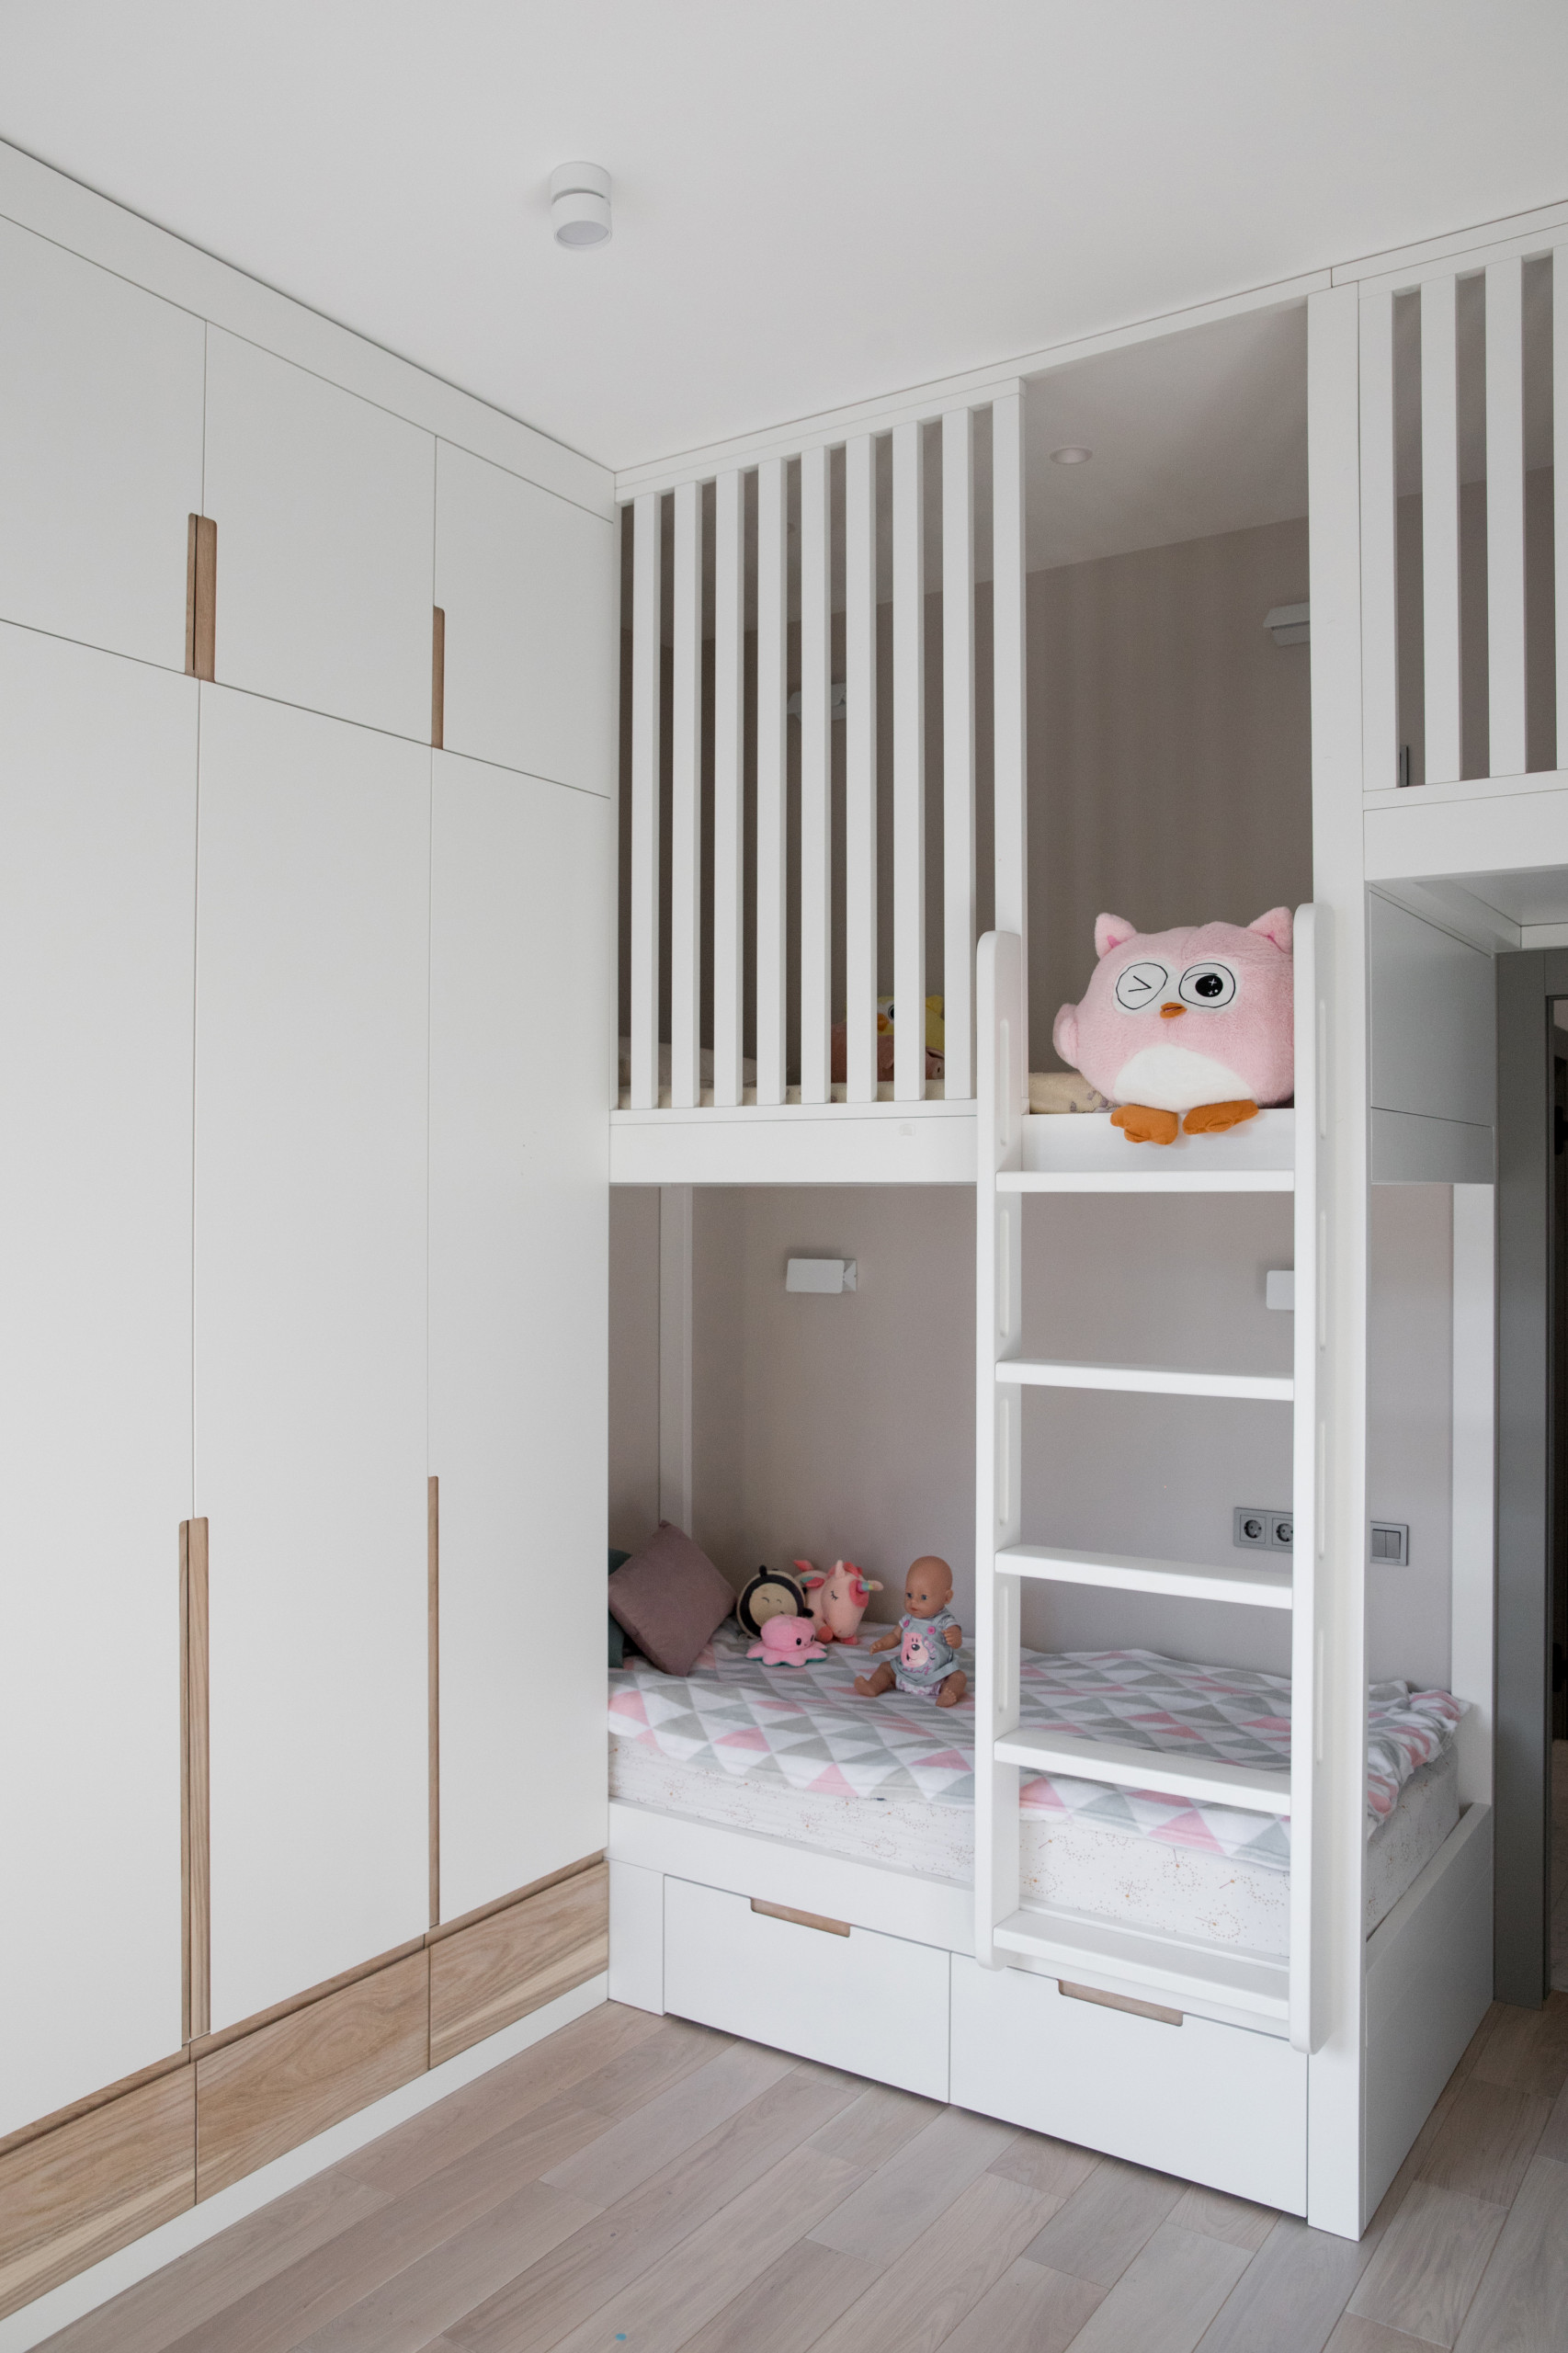 Дизайн детской комнаты для мальчика подростка. - Работа из галереи 3D Моделей